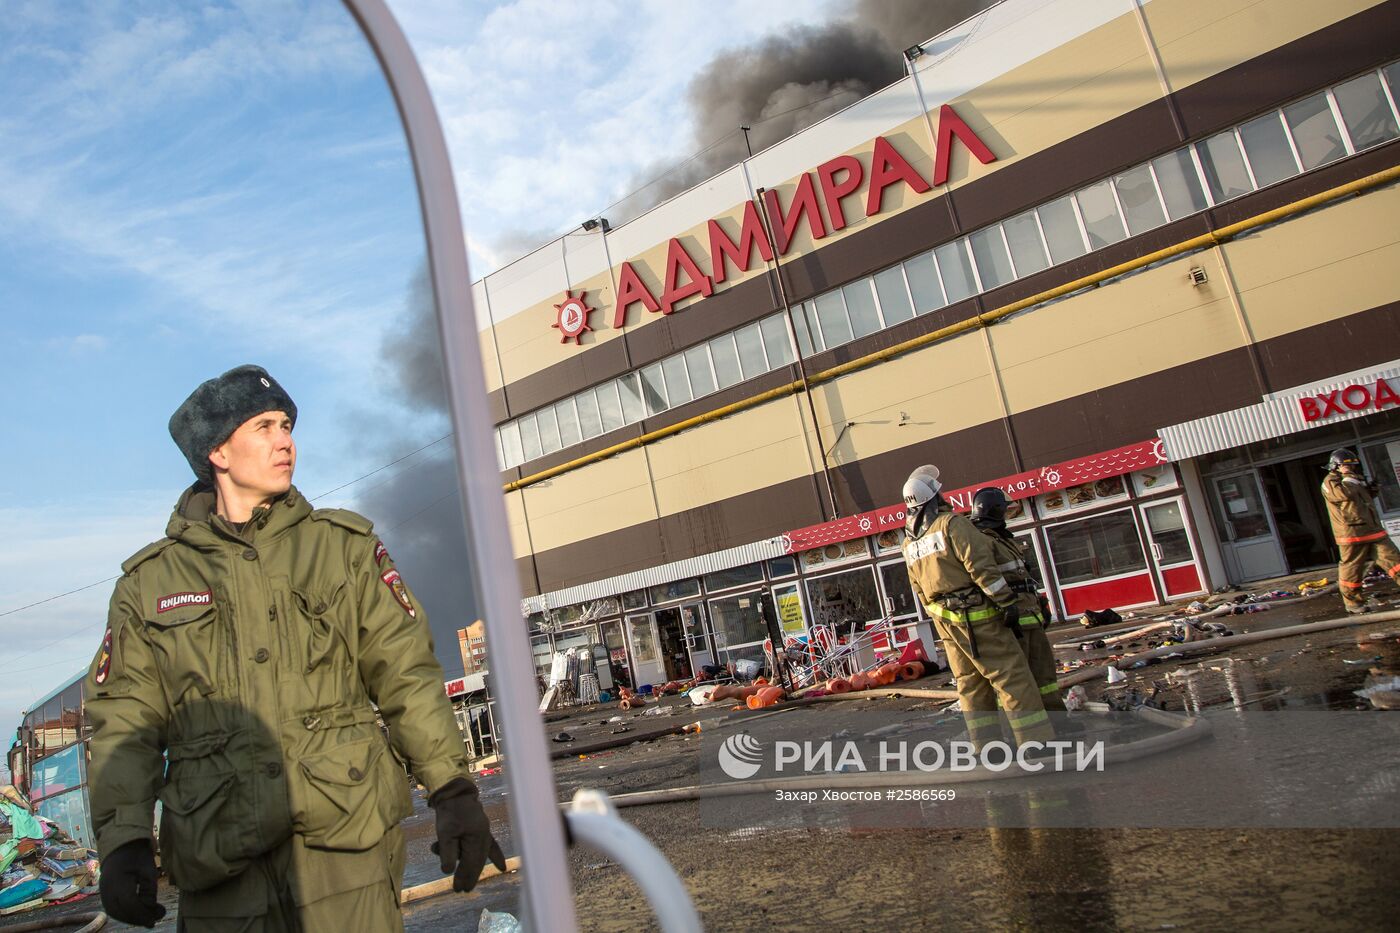 Пожар в торговом центре "Адмирал" в Казани